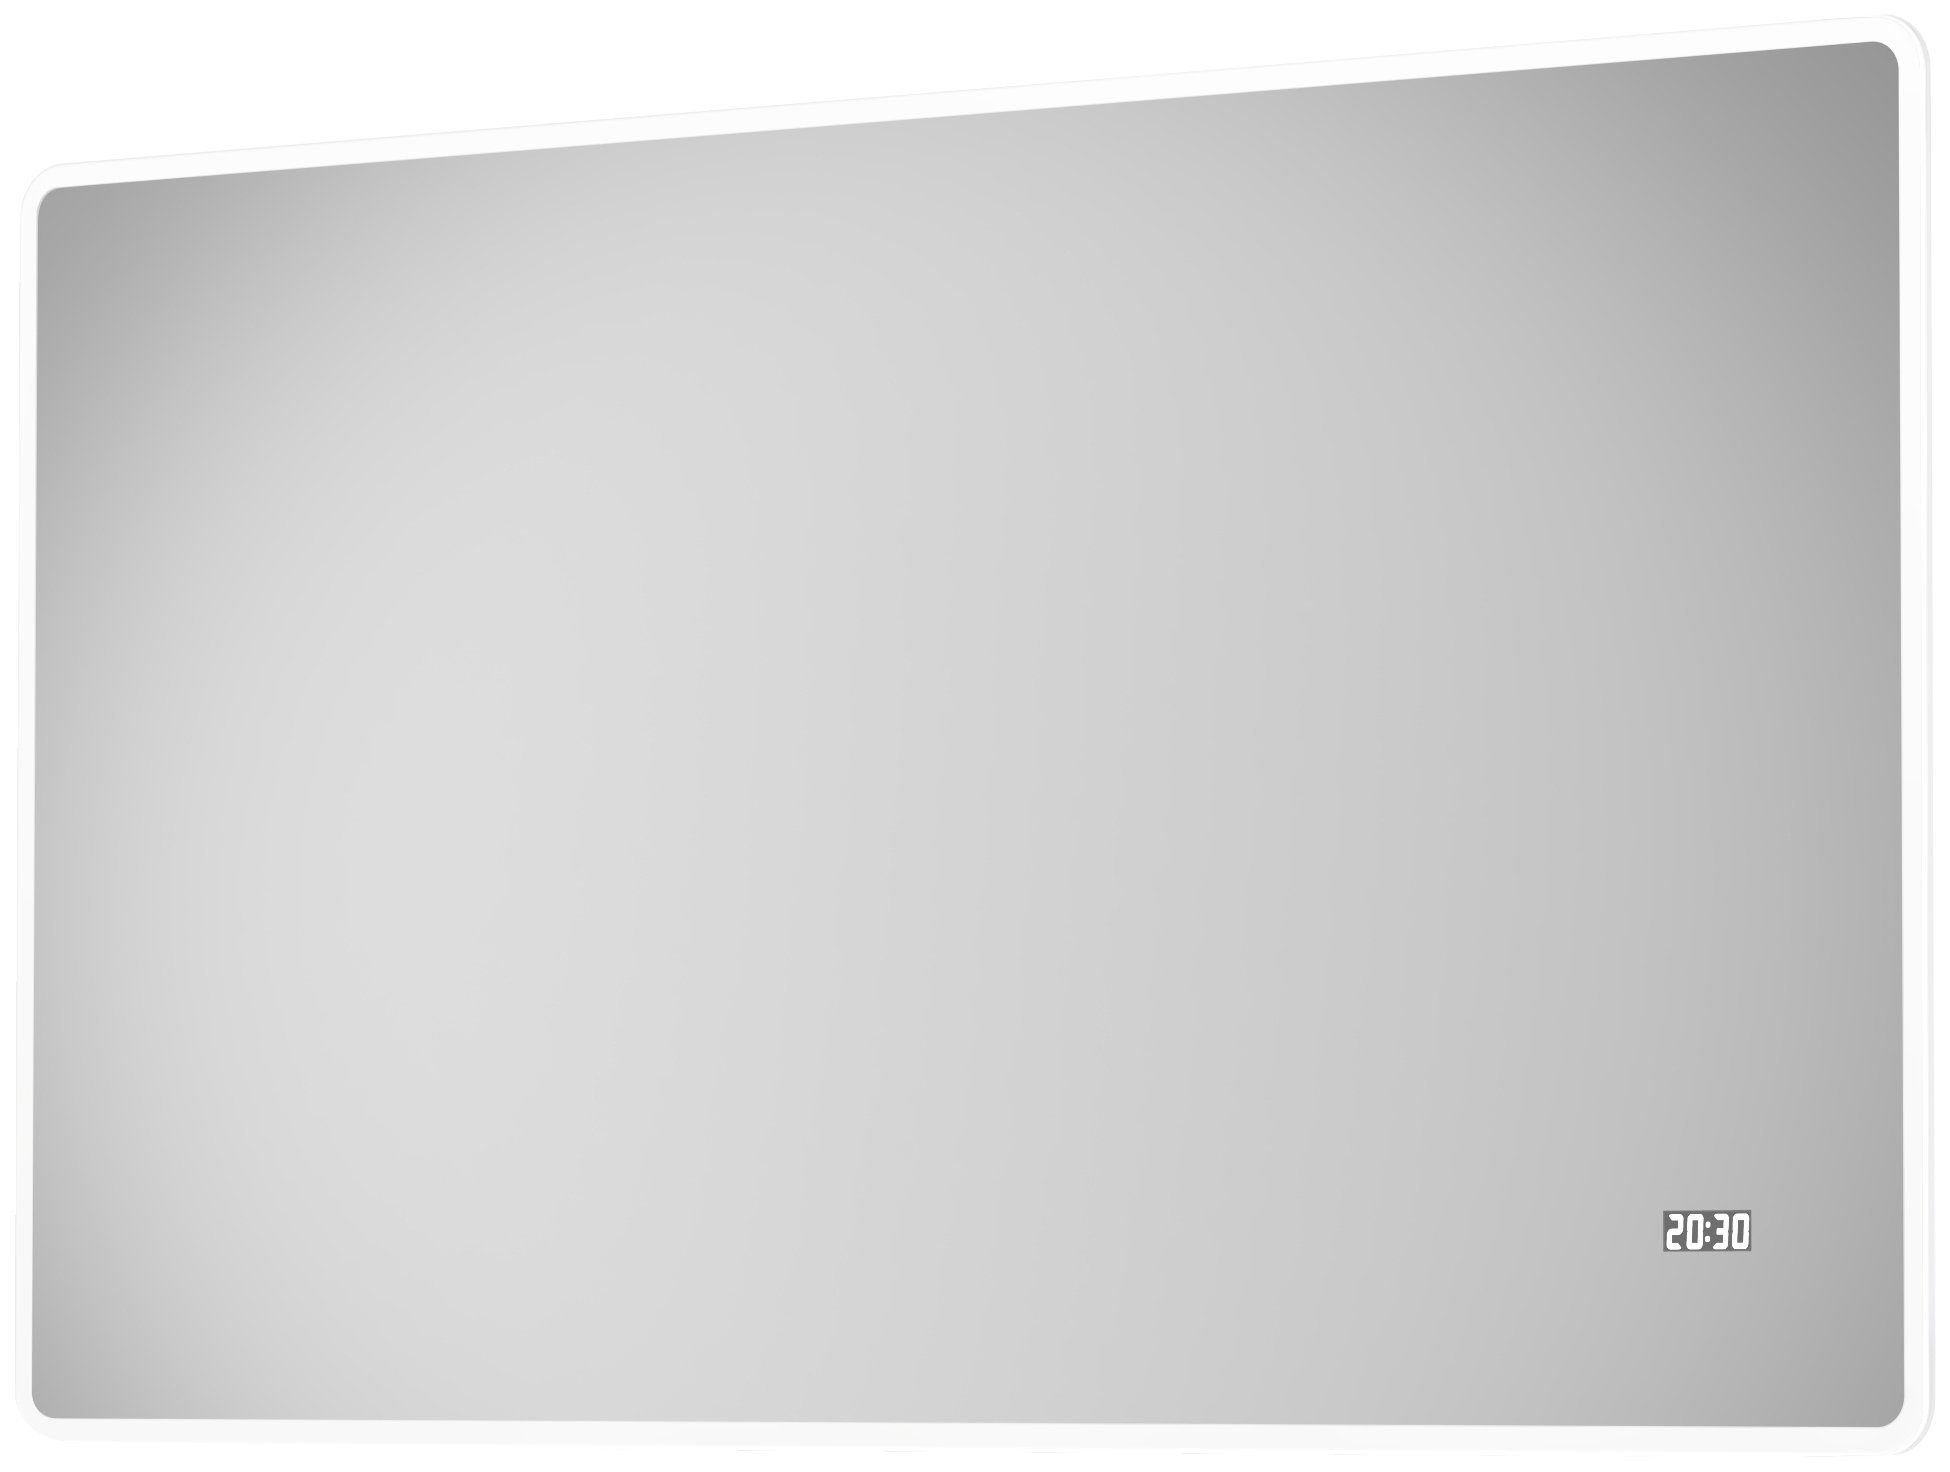 Talos Badspiegel Sun, BxH: 120x70 cm, energiesparend, mit Digitaluhr